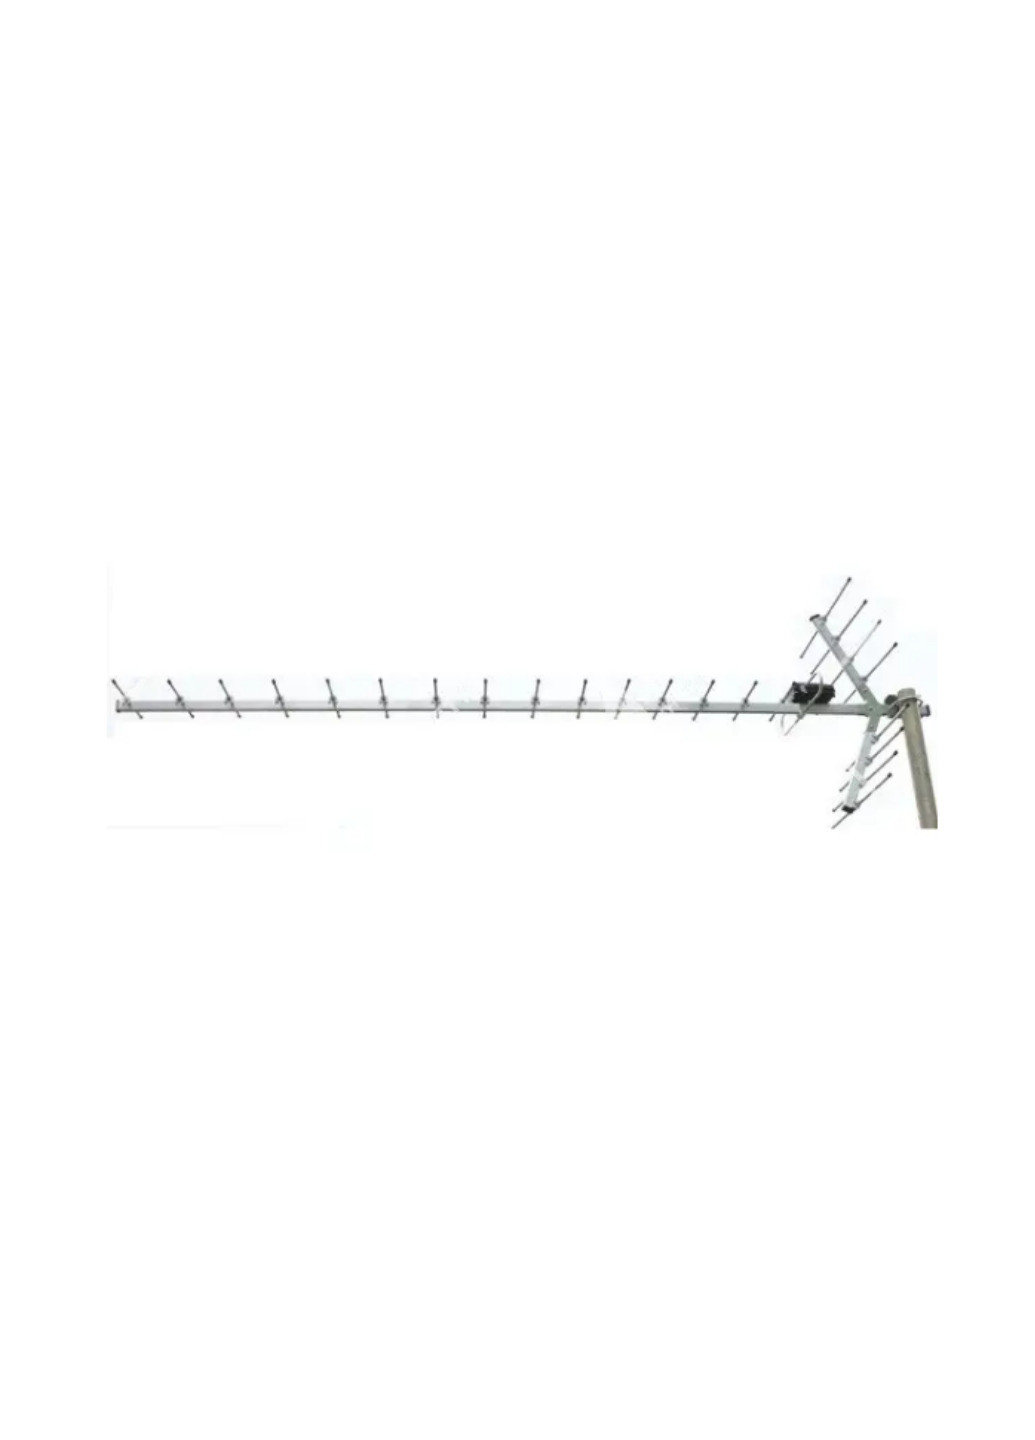 Внешняя телевизионная антенна для аналогового и цифрового DVB-T2 сигнала Волна 2-24 RNet хвиля 2-24 (259447621)